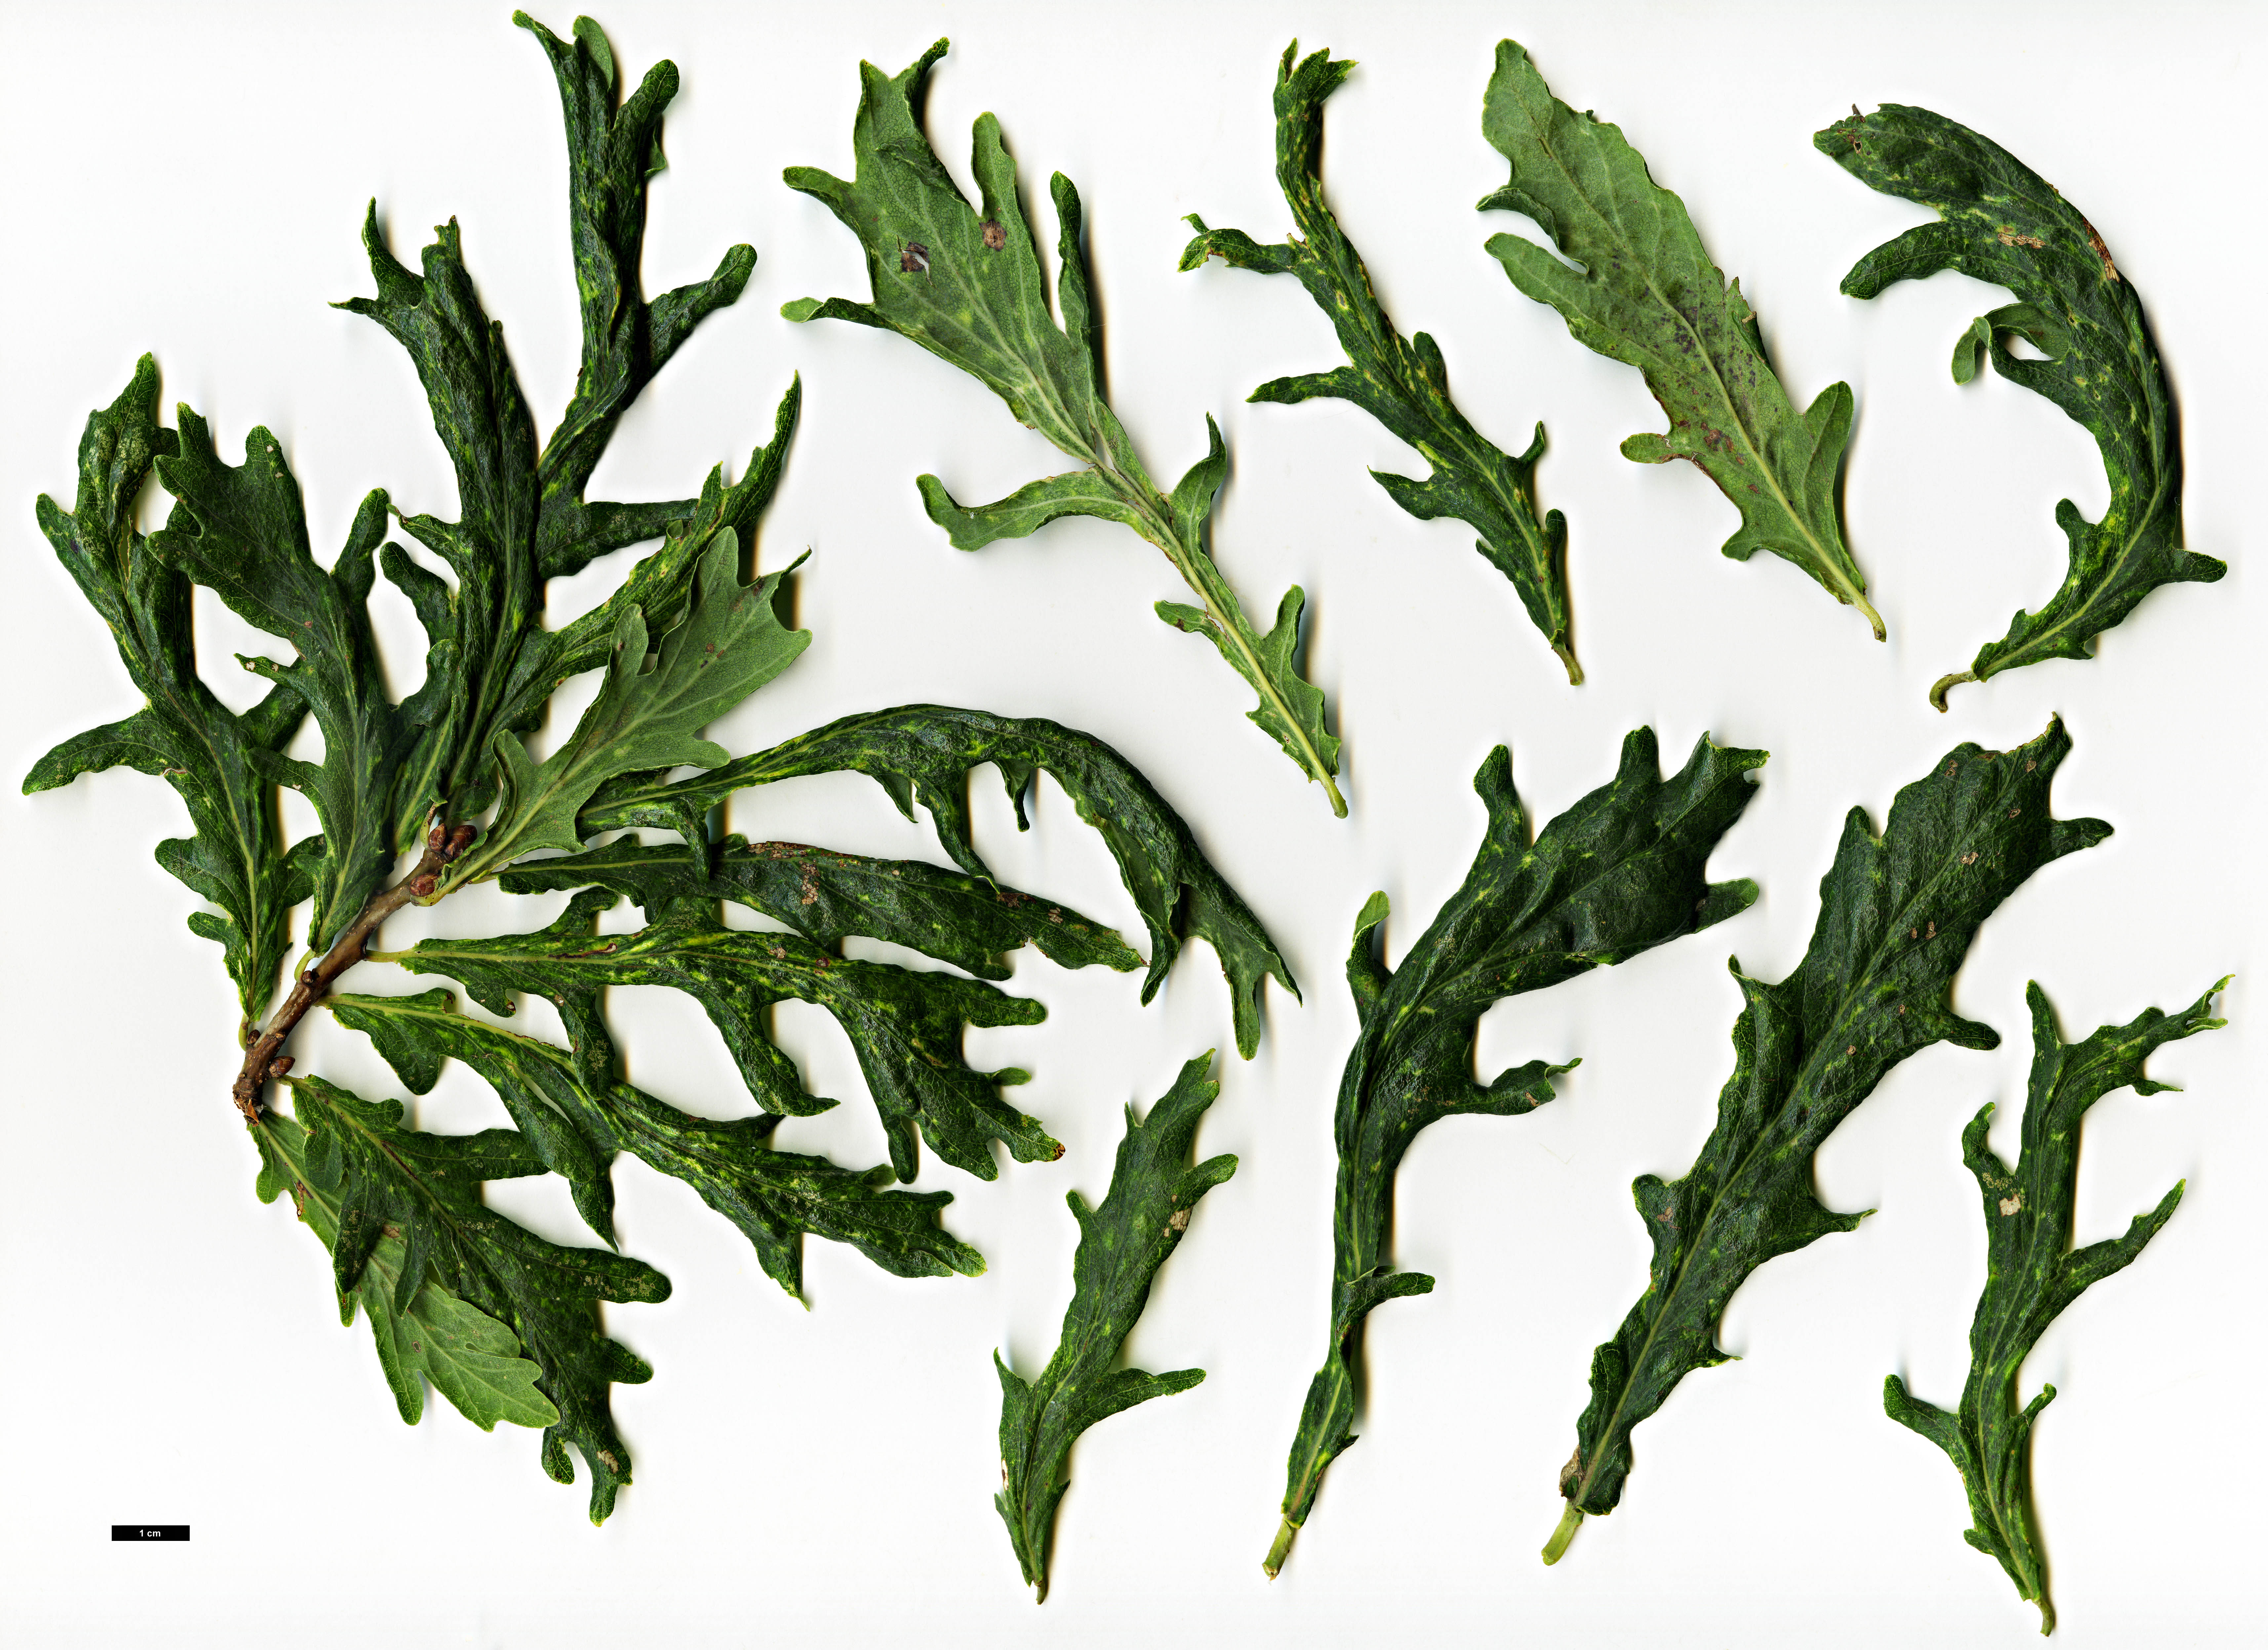 High resolution image: Family: Fagaceae - Genus: Quercus - Taxon: robur - SpeciesSub: 'Strypemonde'